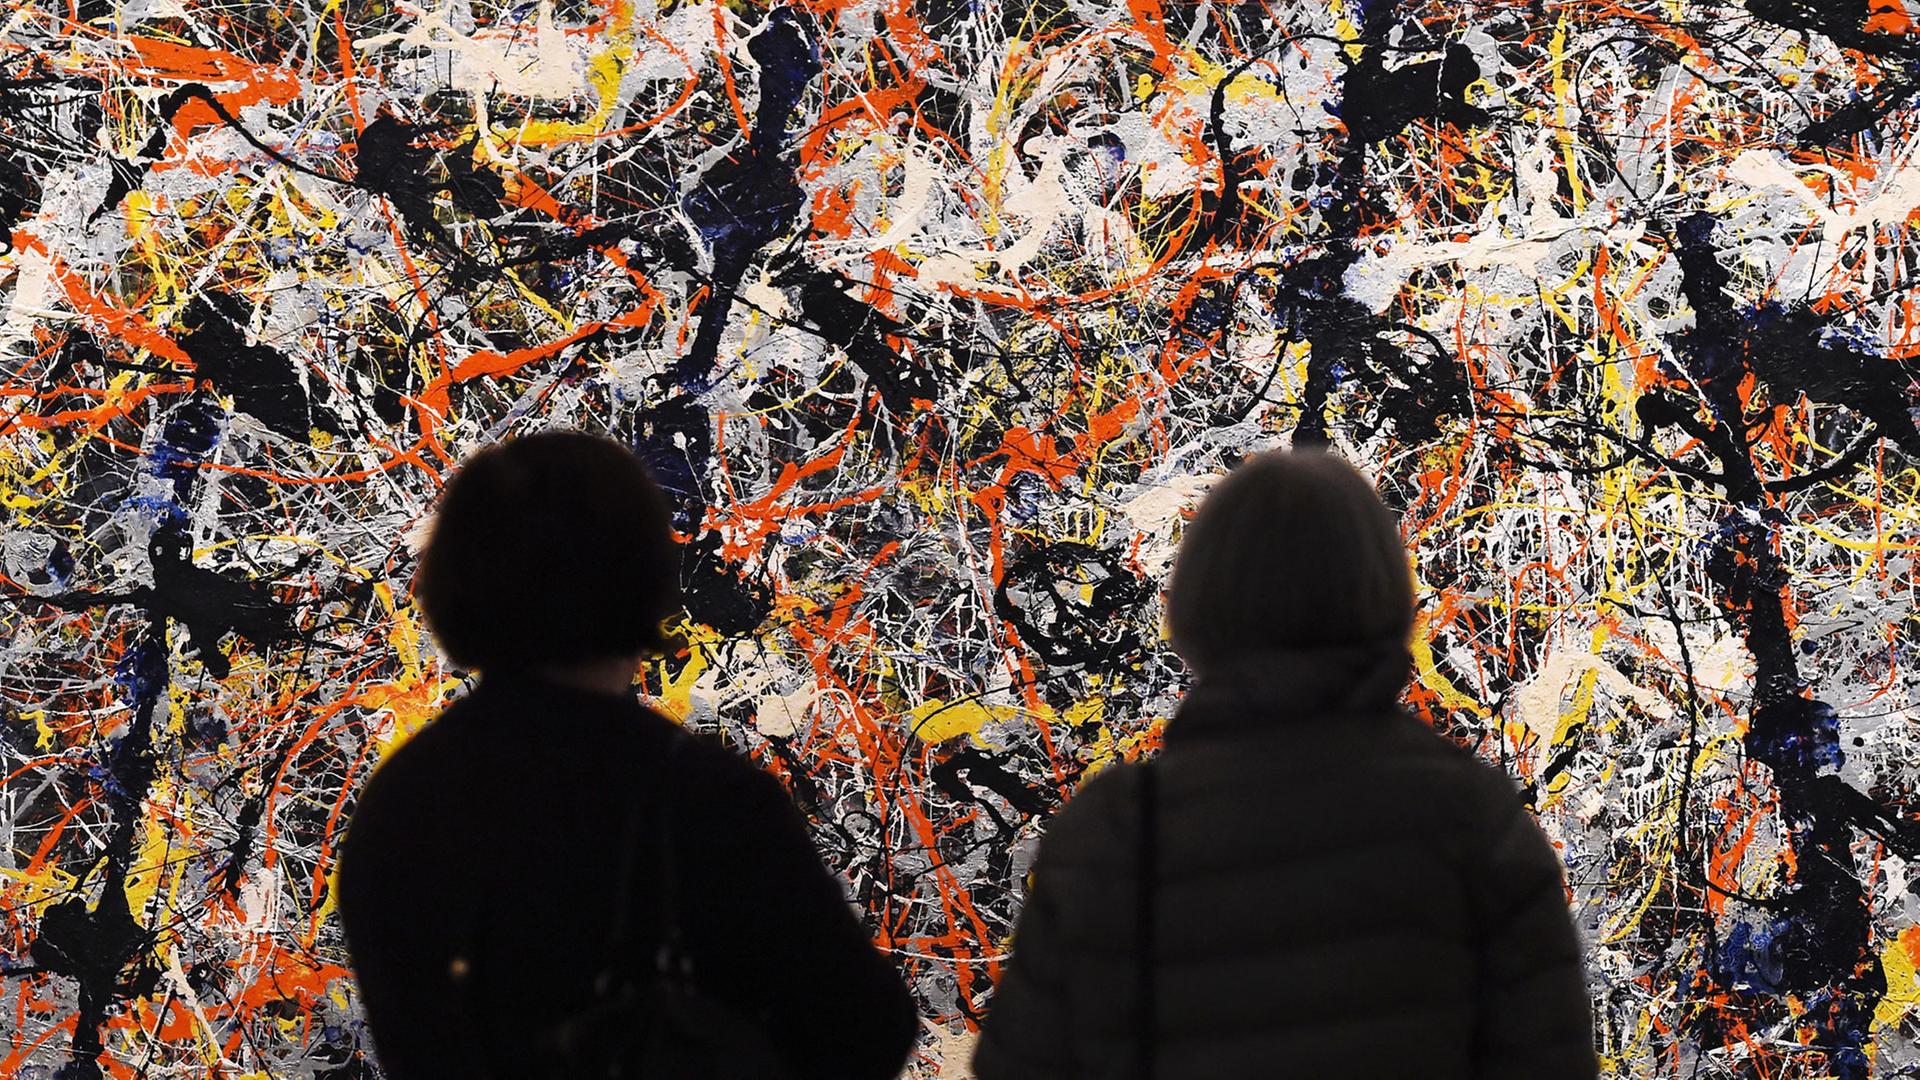 Museumsbesucher betrachten ein Bild der US-Künstlers Jackson Pollock, Titel: "Blue Poles" (1952)